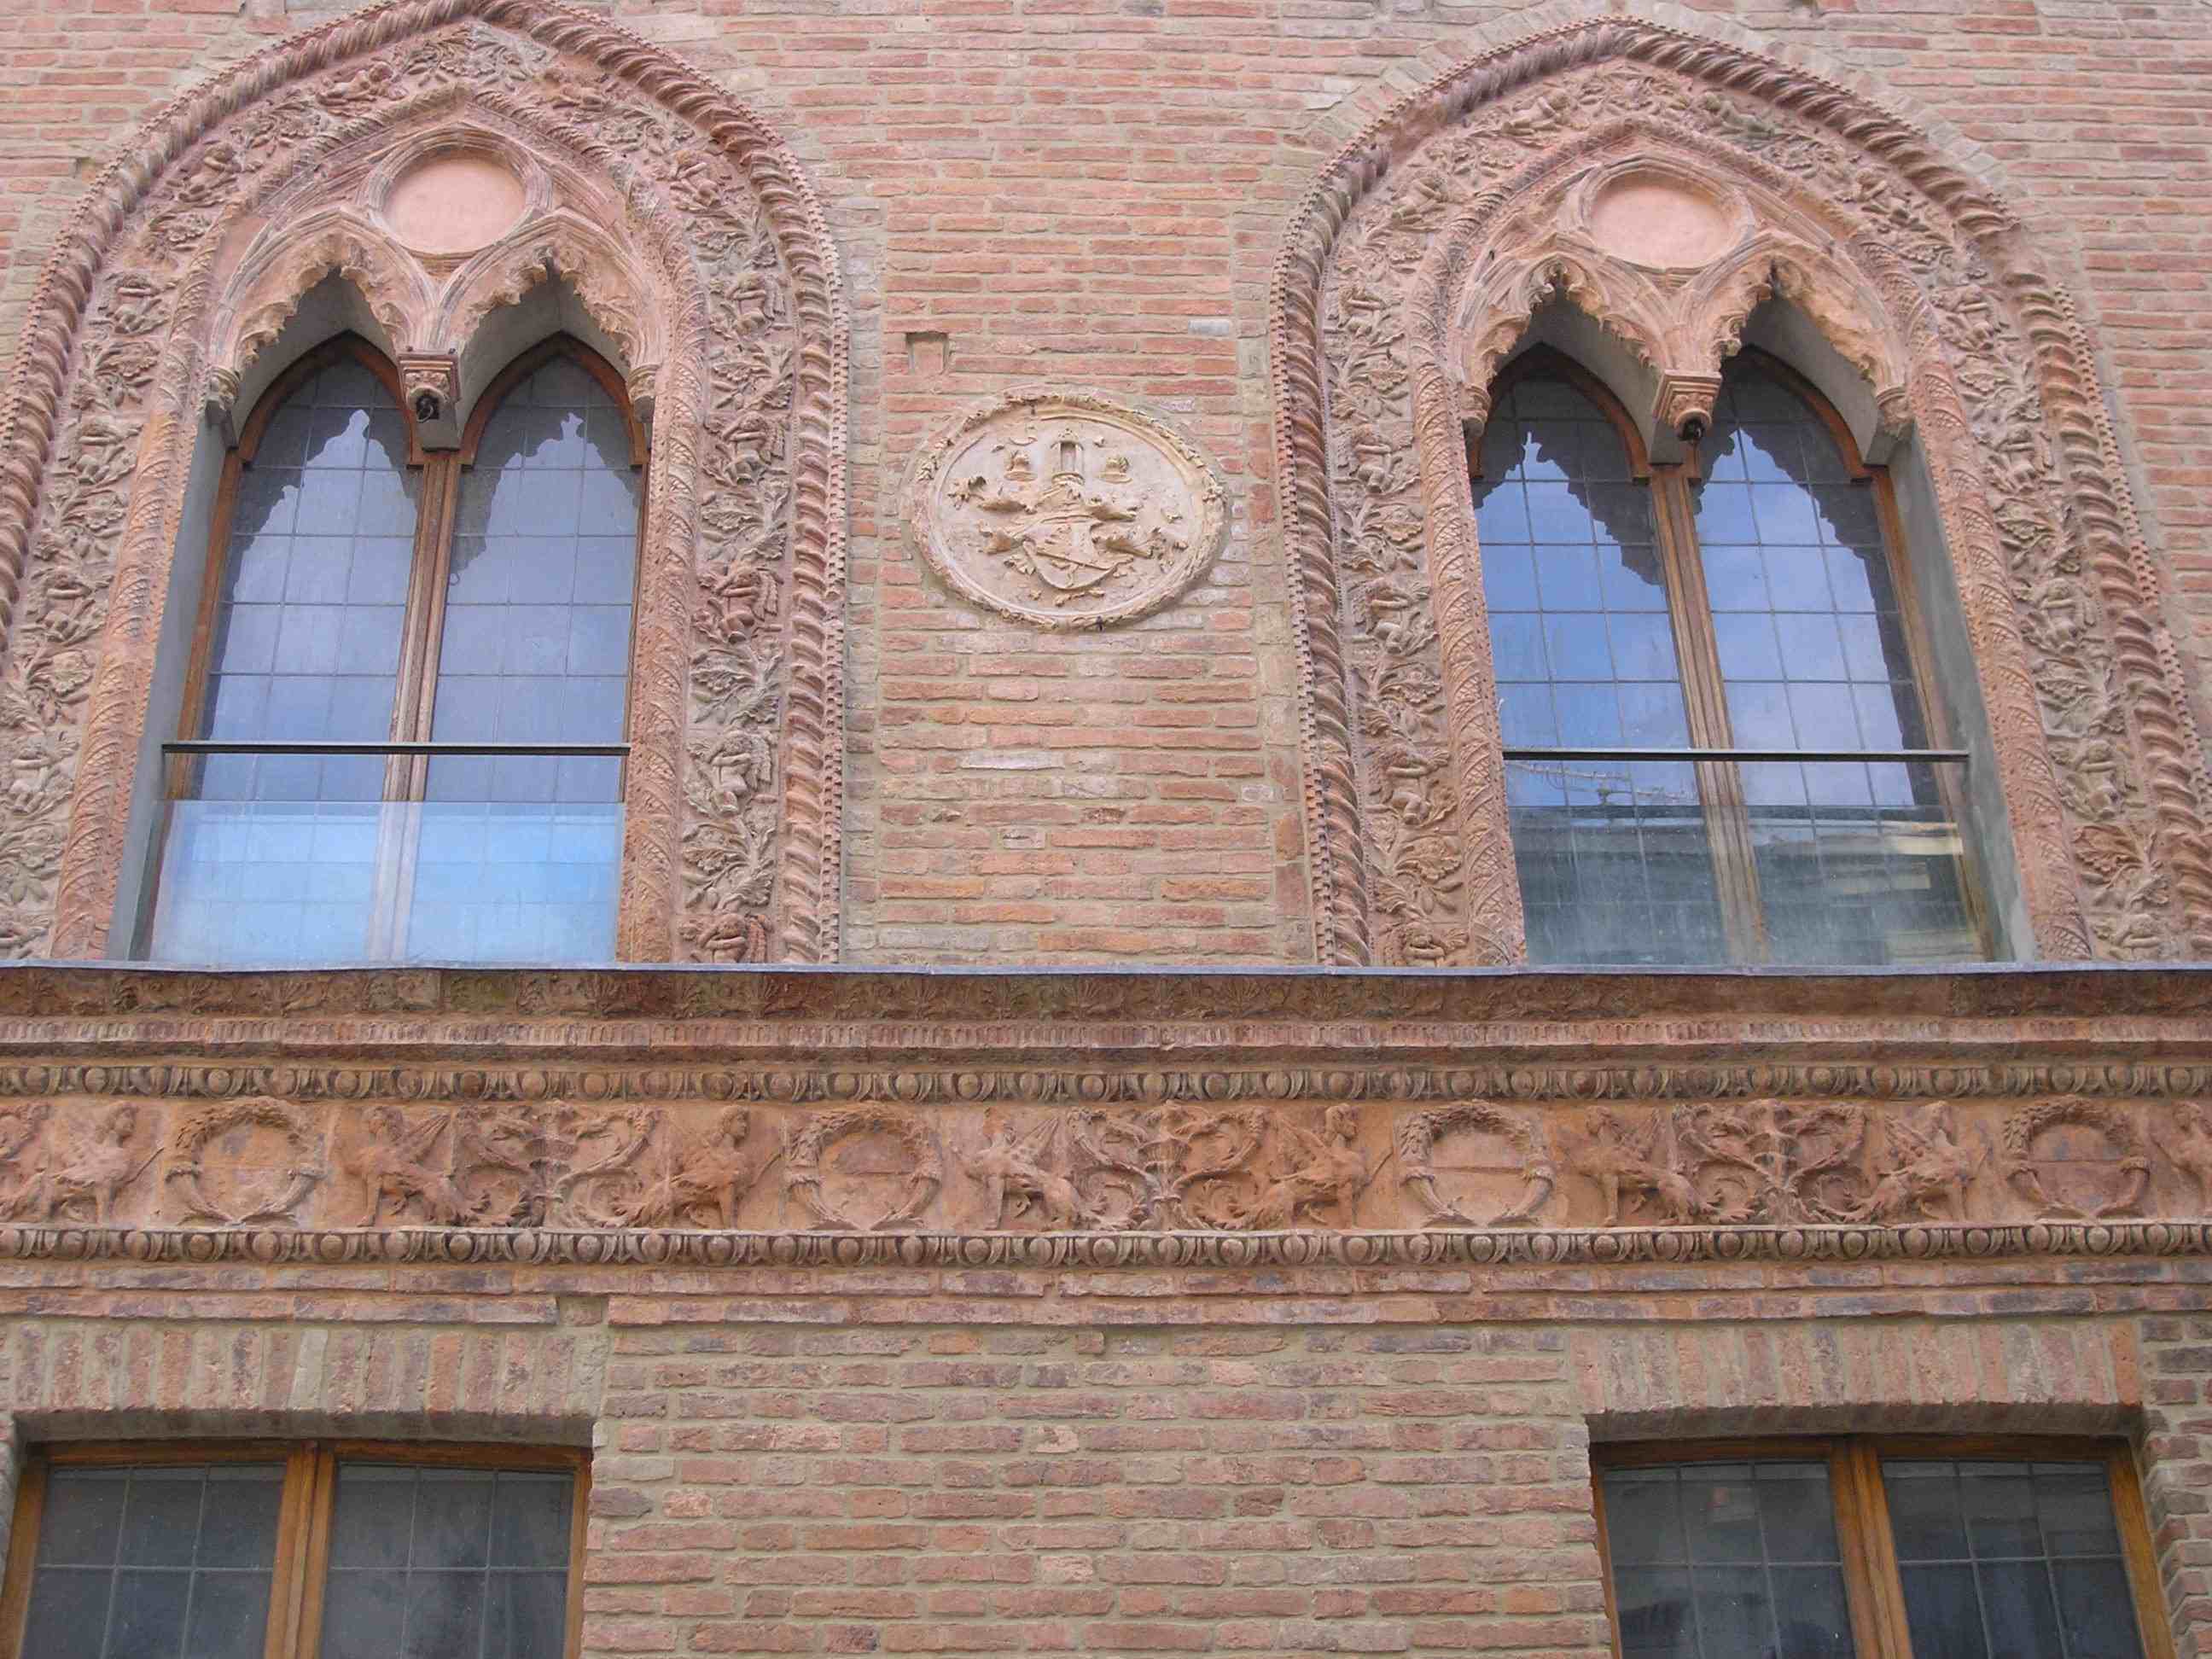 Cornici decorative: il restauro di Palazzo Grossi a Fiorenzuola d’Arda